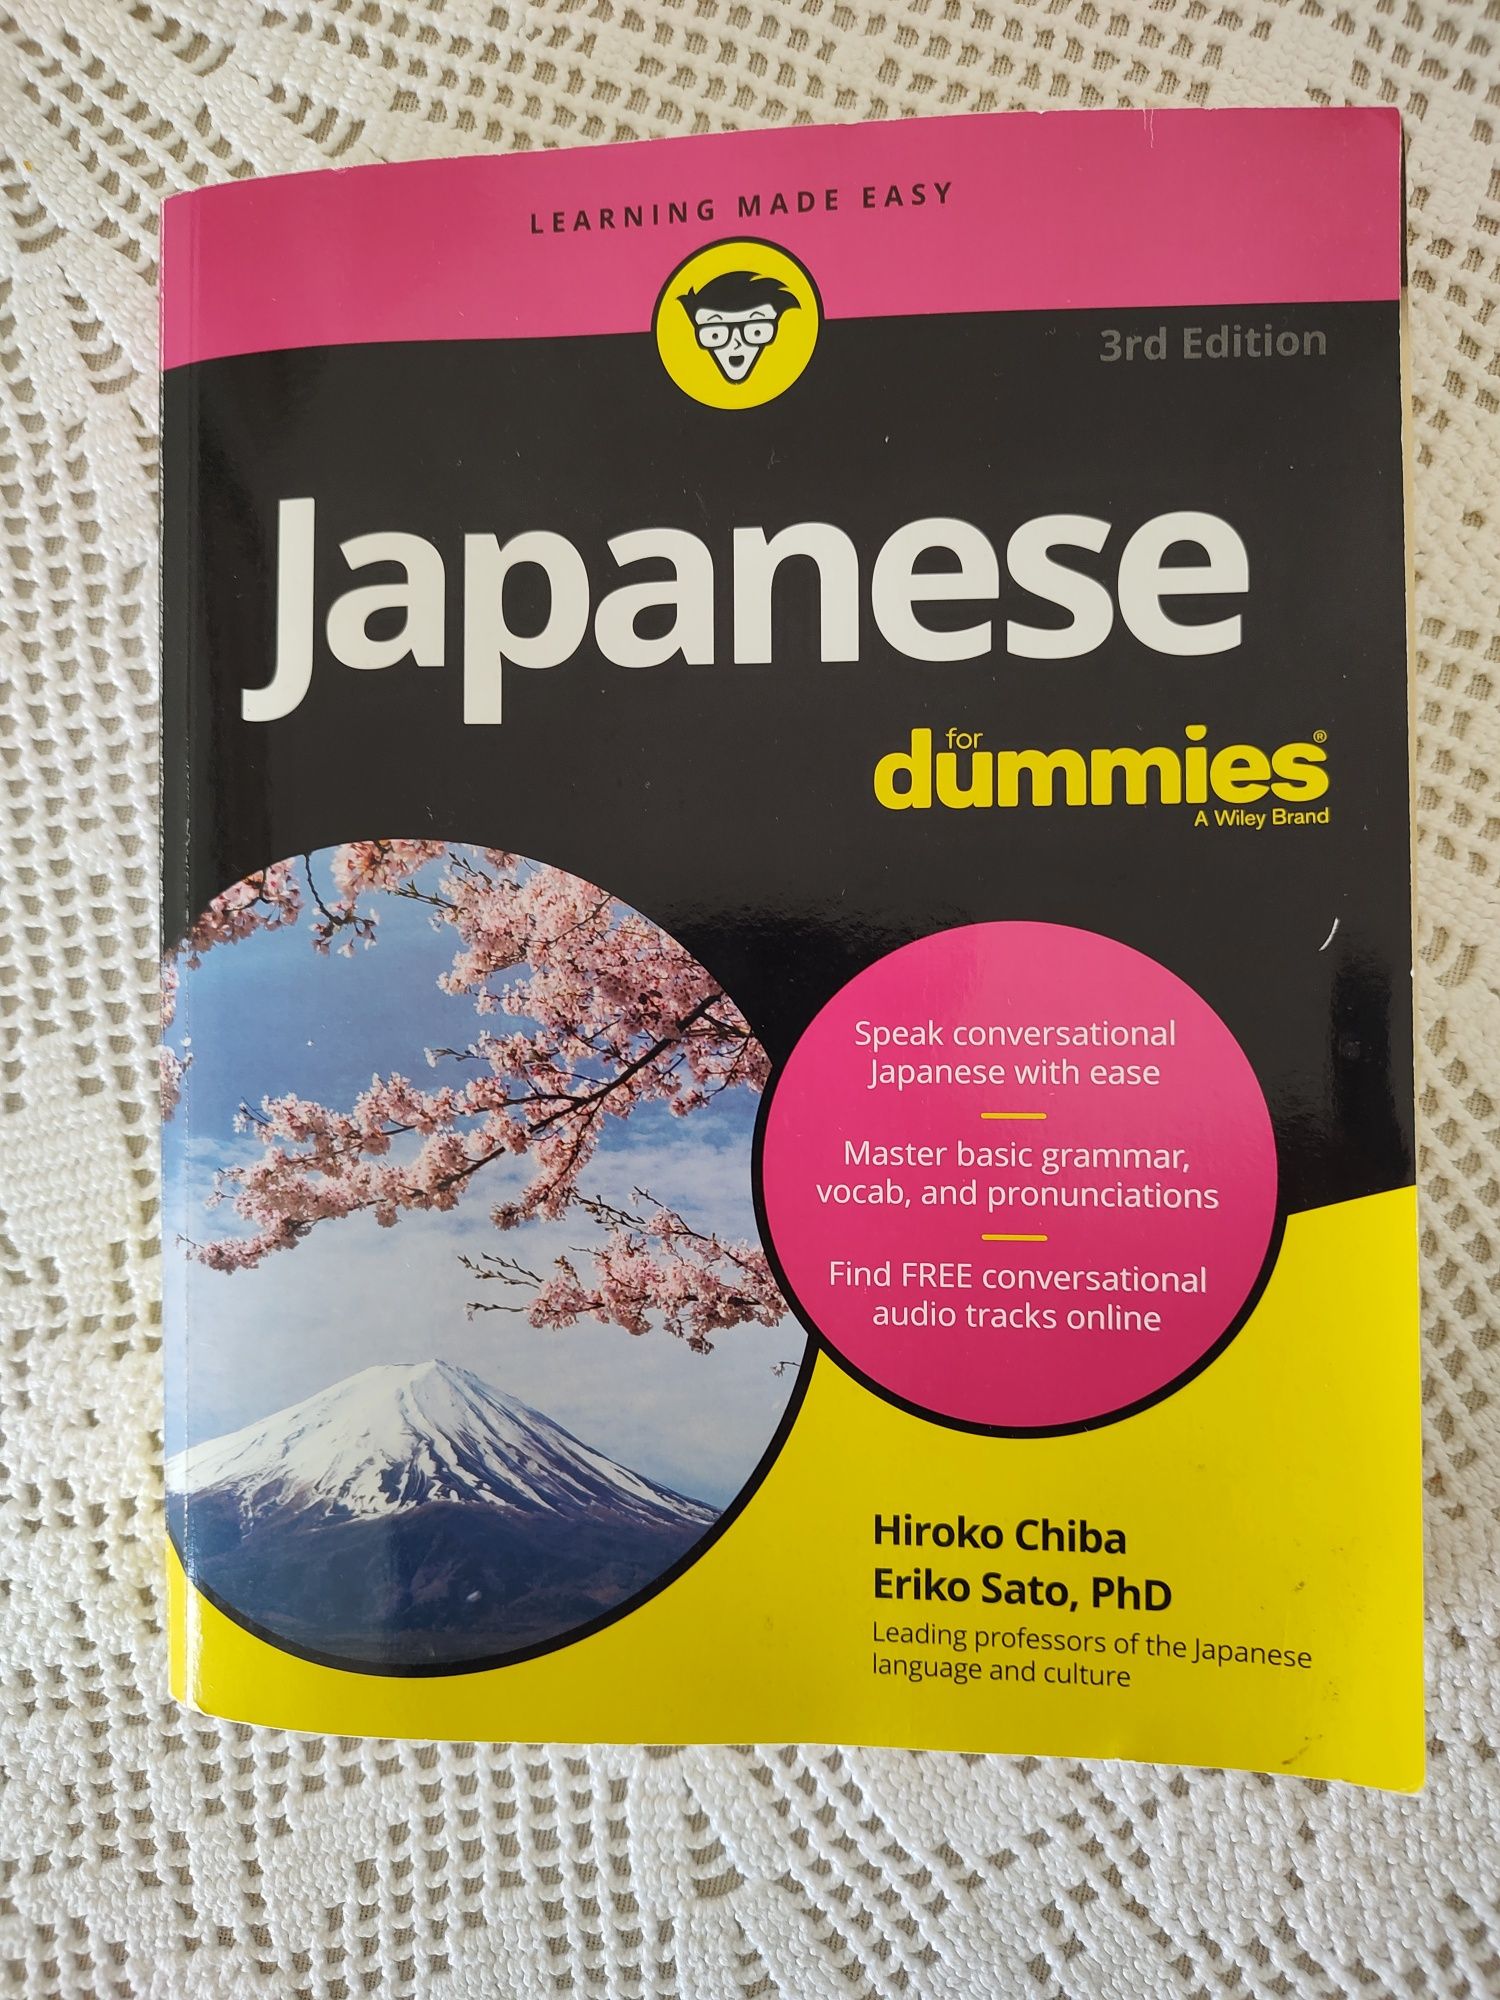 Aprender japonês, Japanese for Dummies